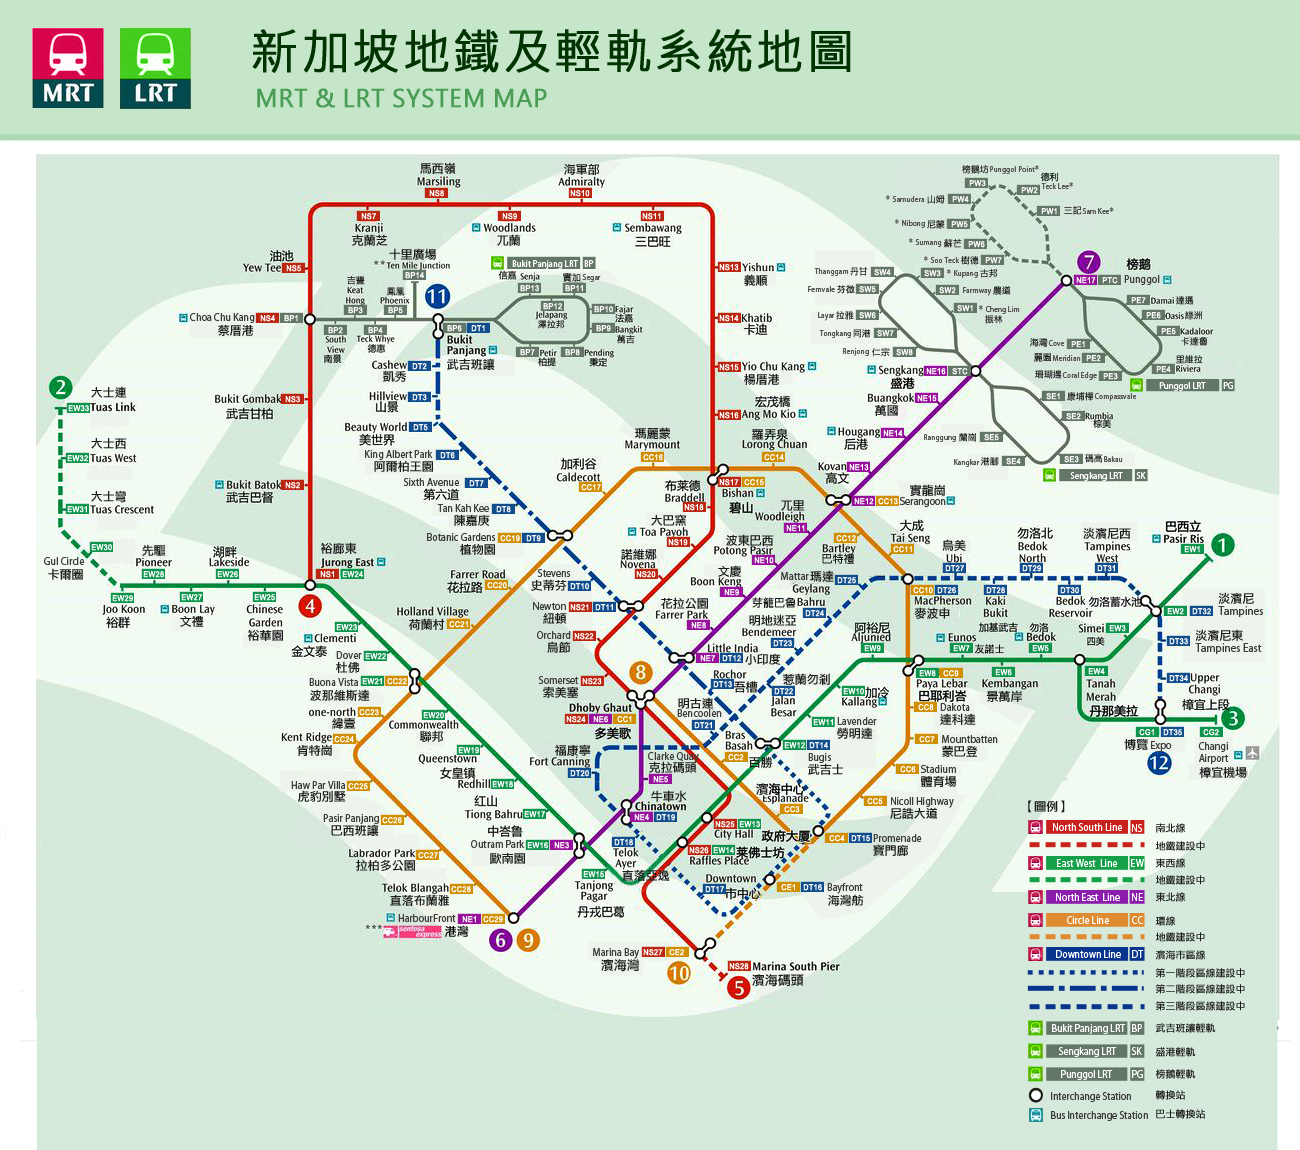 新加坡地铁换乘问题线路之间的换乘问题